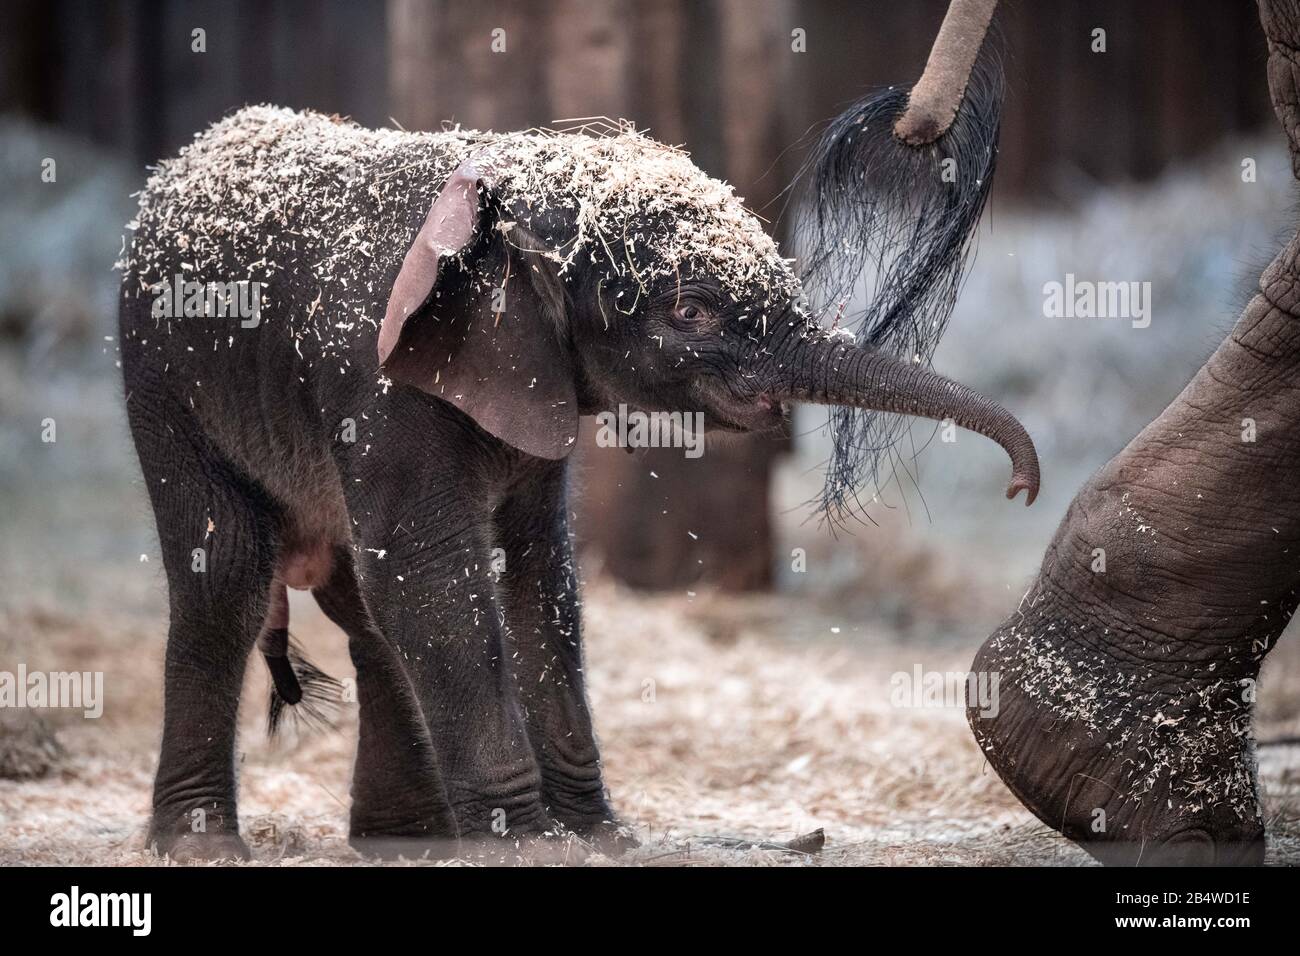 Wuppertal, Deutschland. März 2020. Der Elefantenjunge "Tsavo" befindet sich im Gehege des Zoos. Am Freitag wurde im Zoo Wuppertal ein Baby-Elefant geboren. Die Elefantenkuh 'Sweni' brachte das gesunde männliche Kalb zur Welt. Der Elefantenjunge heißt "Tsavo". Das Elefantenhaus war am Freitag geschlossen, aber ab Samstag ist das Jungtier öffentlich zu sehen. Kredit: Fabian Strauch / epa Scanpix Schweden / dpa / Alamy Live News Stockfoto